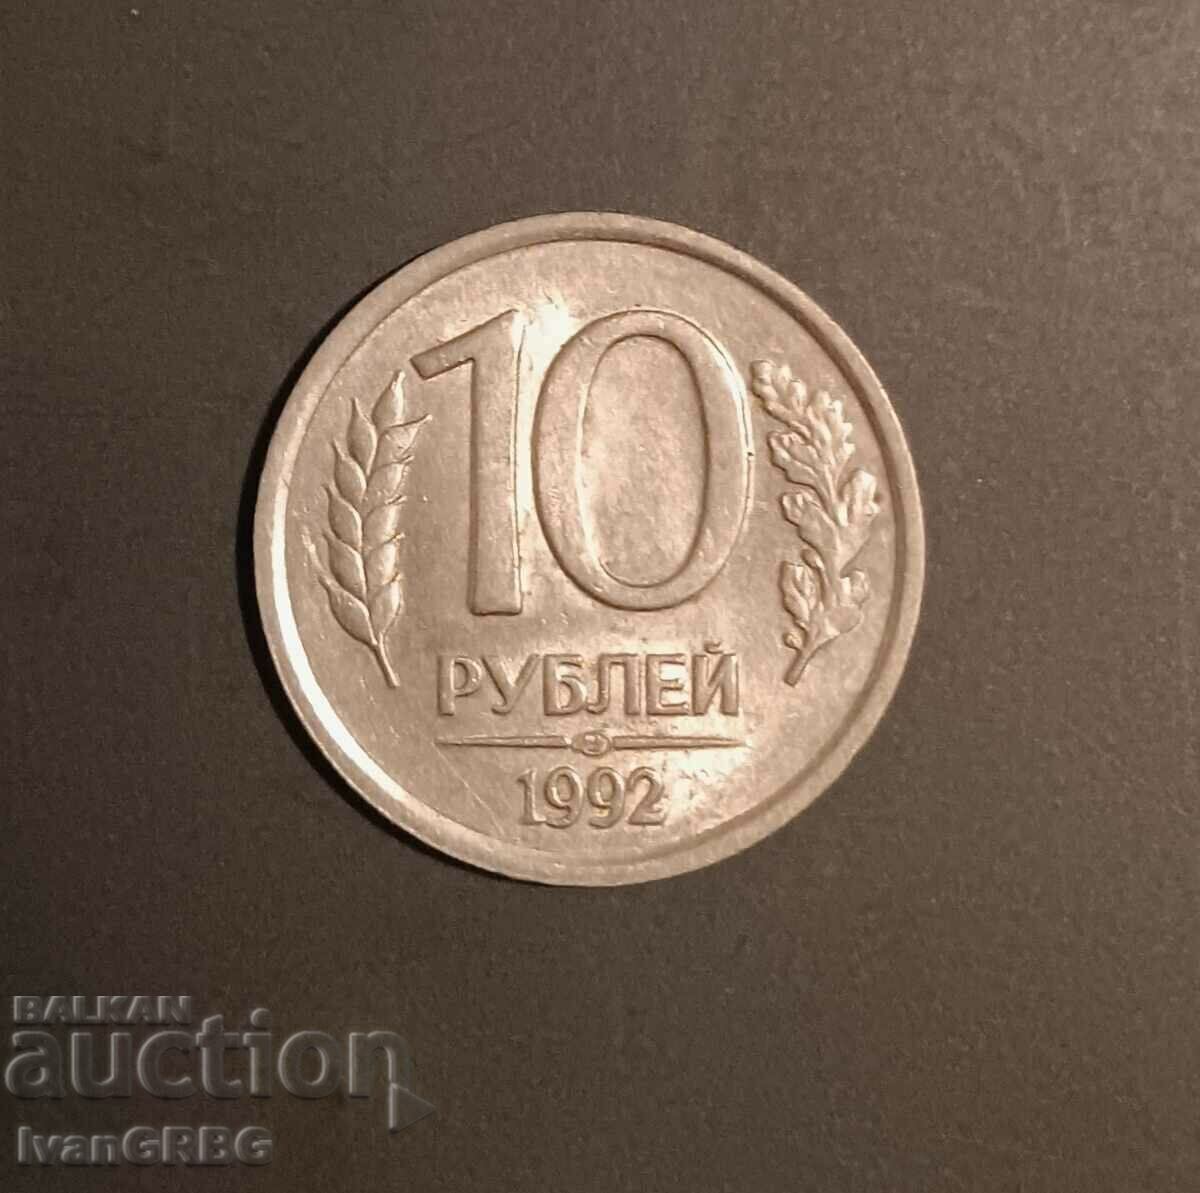 10 rubles Russia 1992